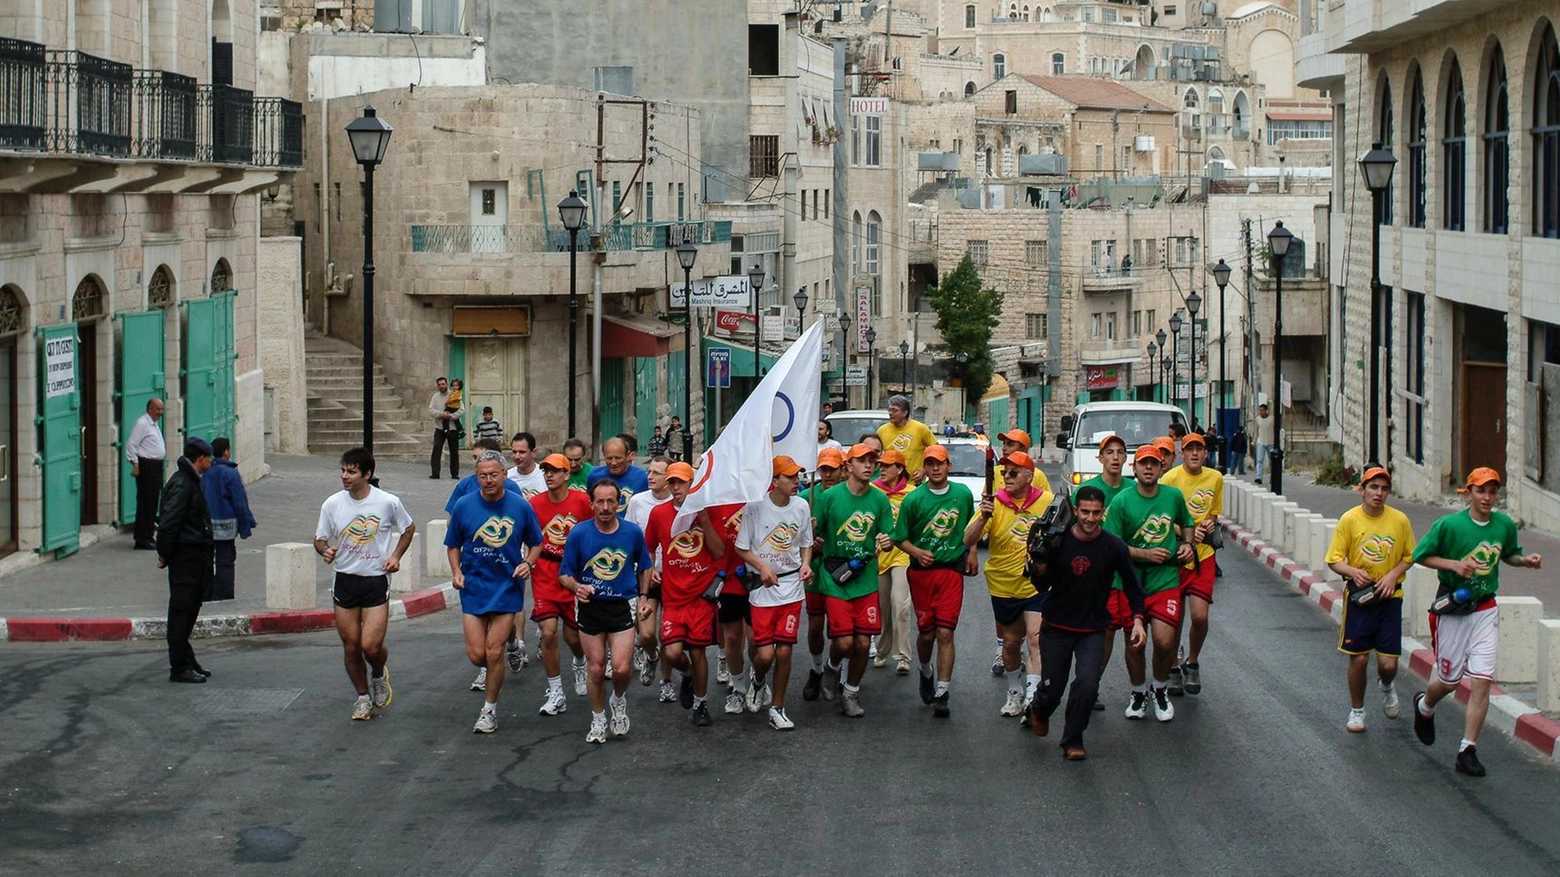 La Maratona della Pace: "Vent’anni fa l’idea. La speranza non muore"